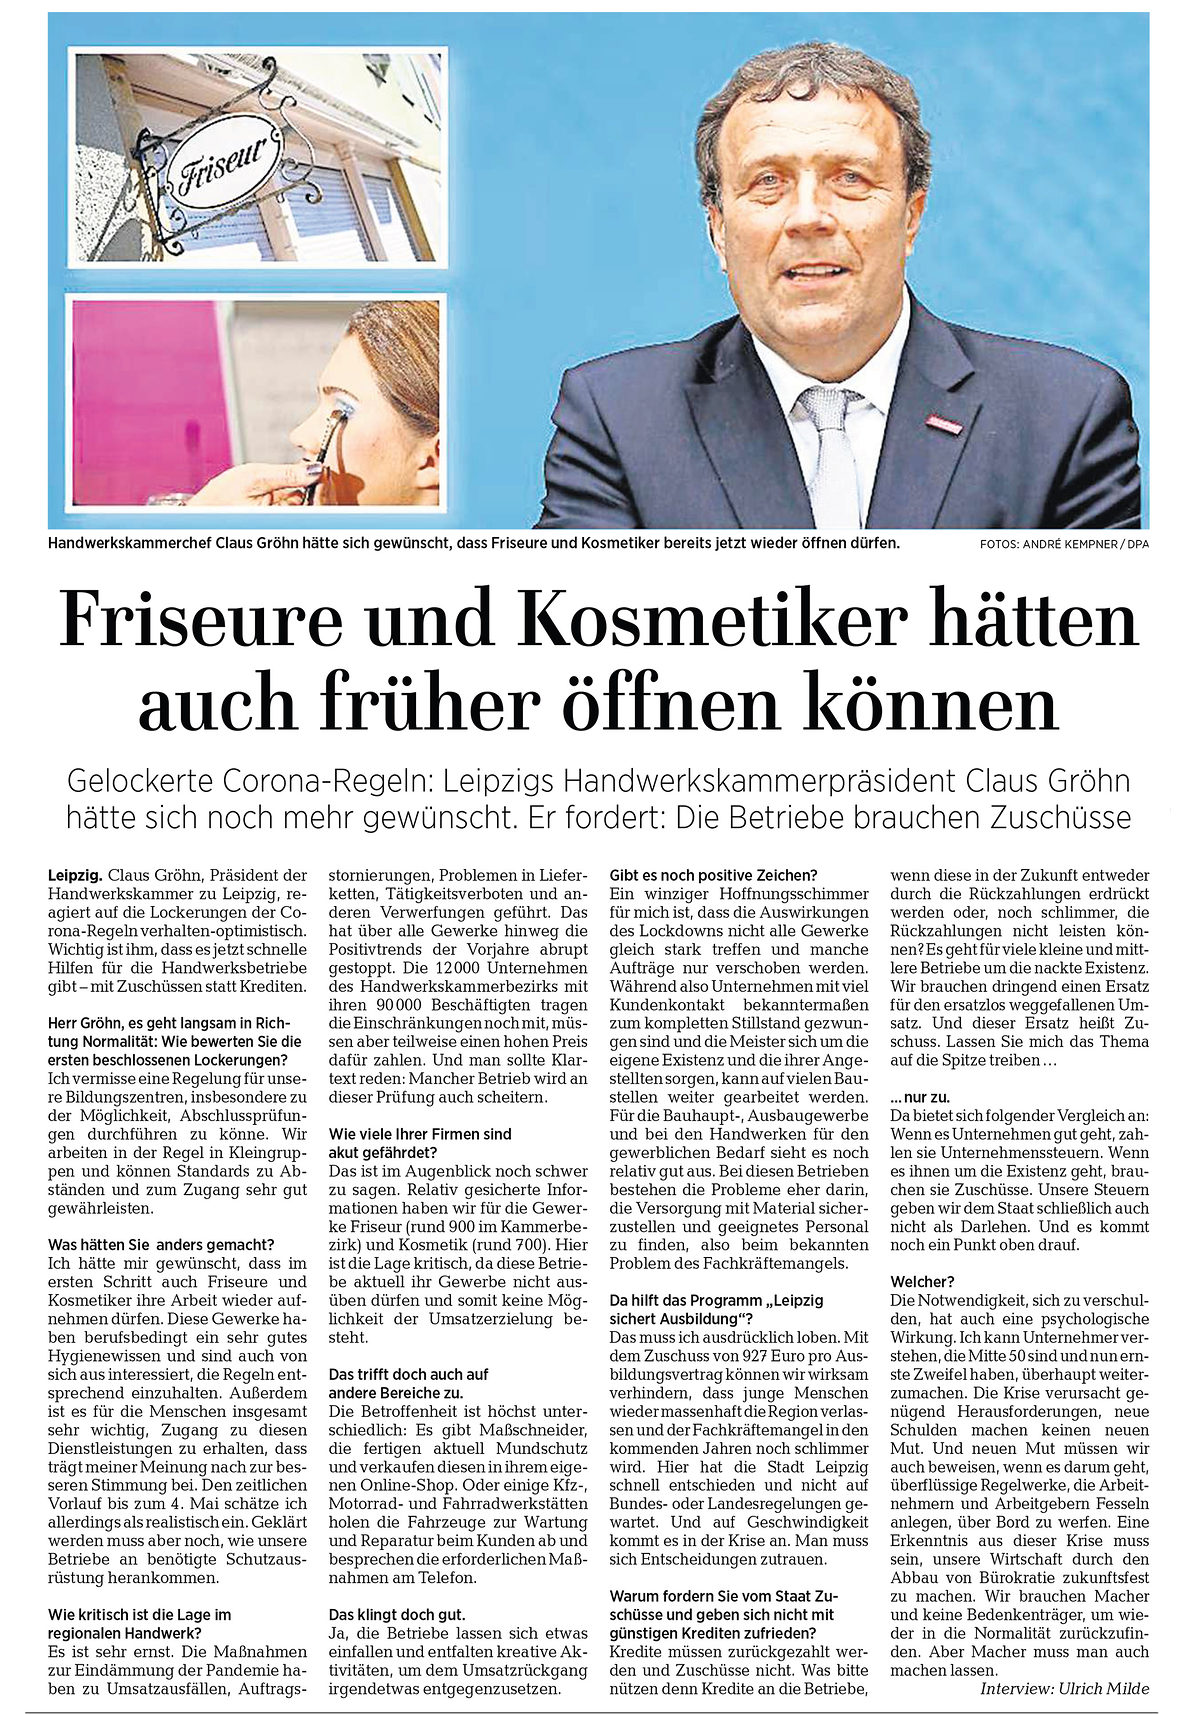 17. April 2020 / Leipziger Volkszeitung